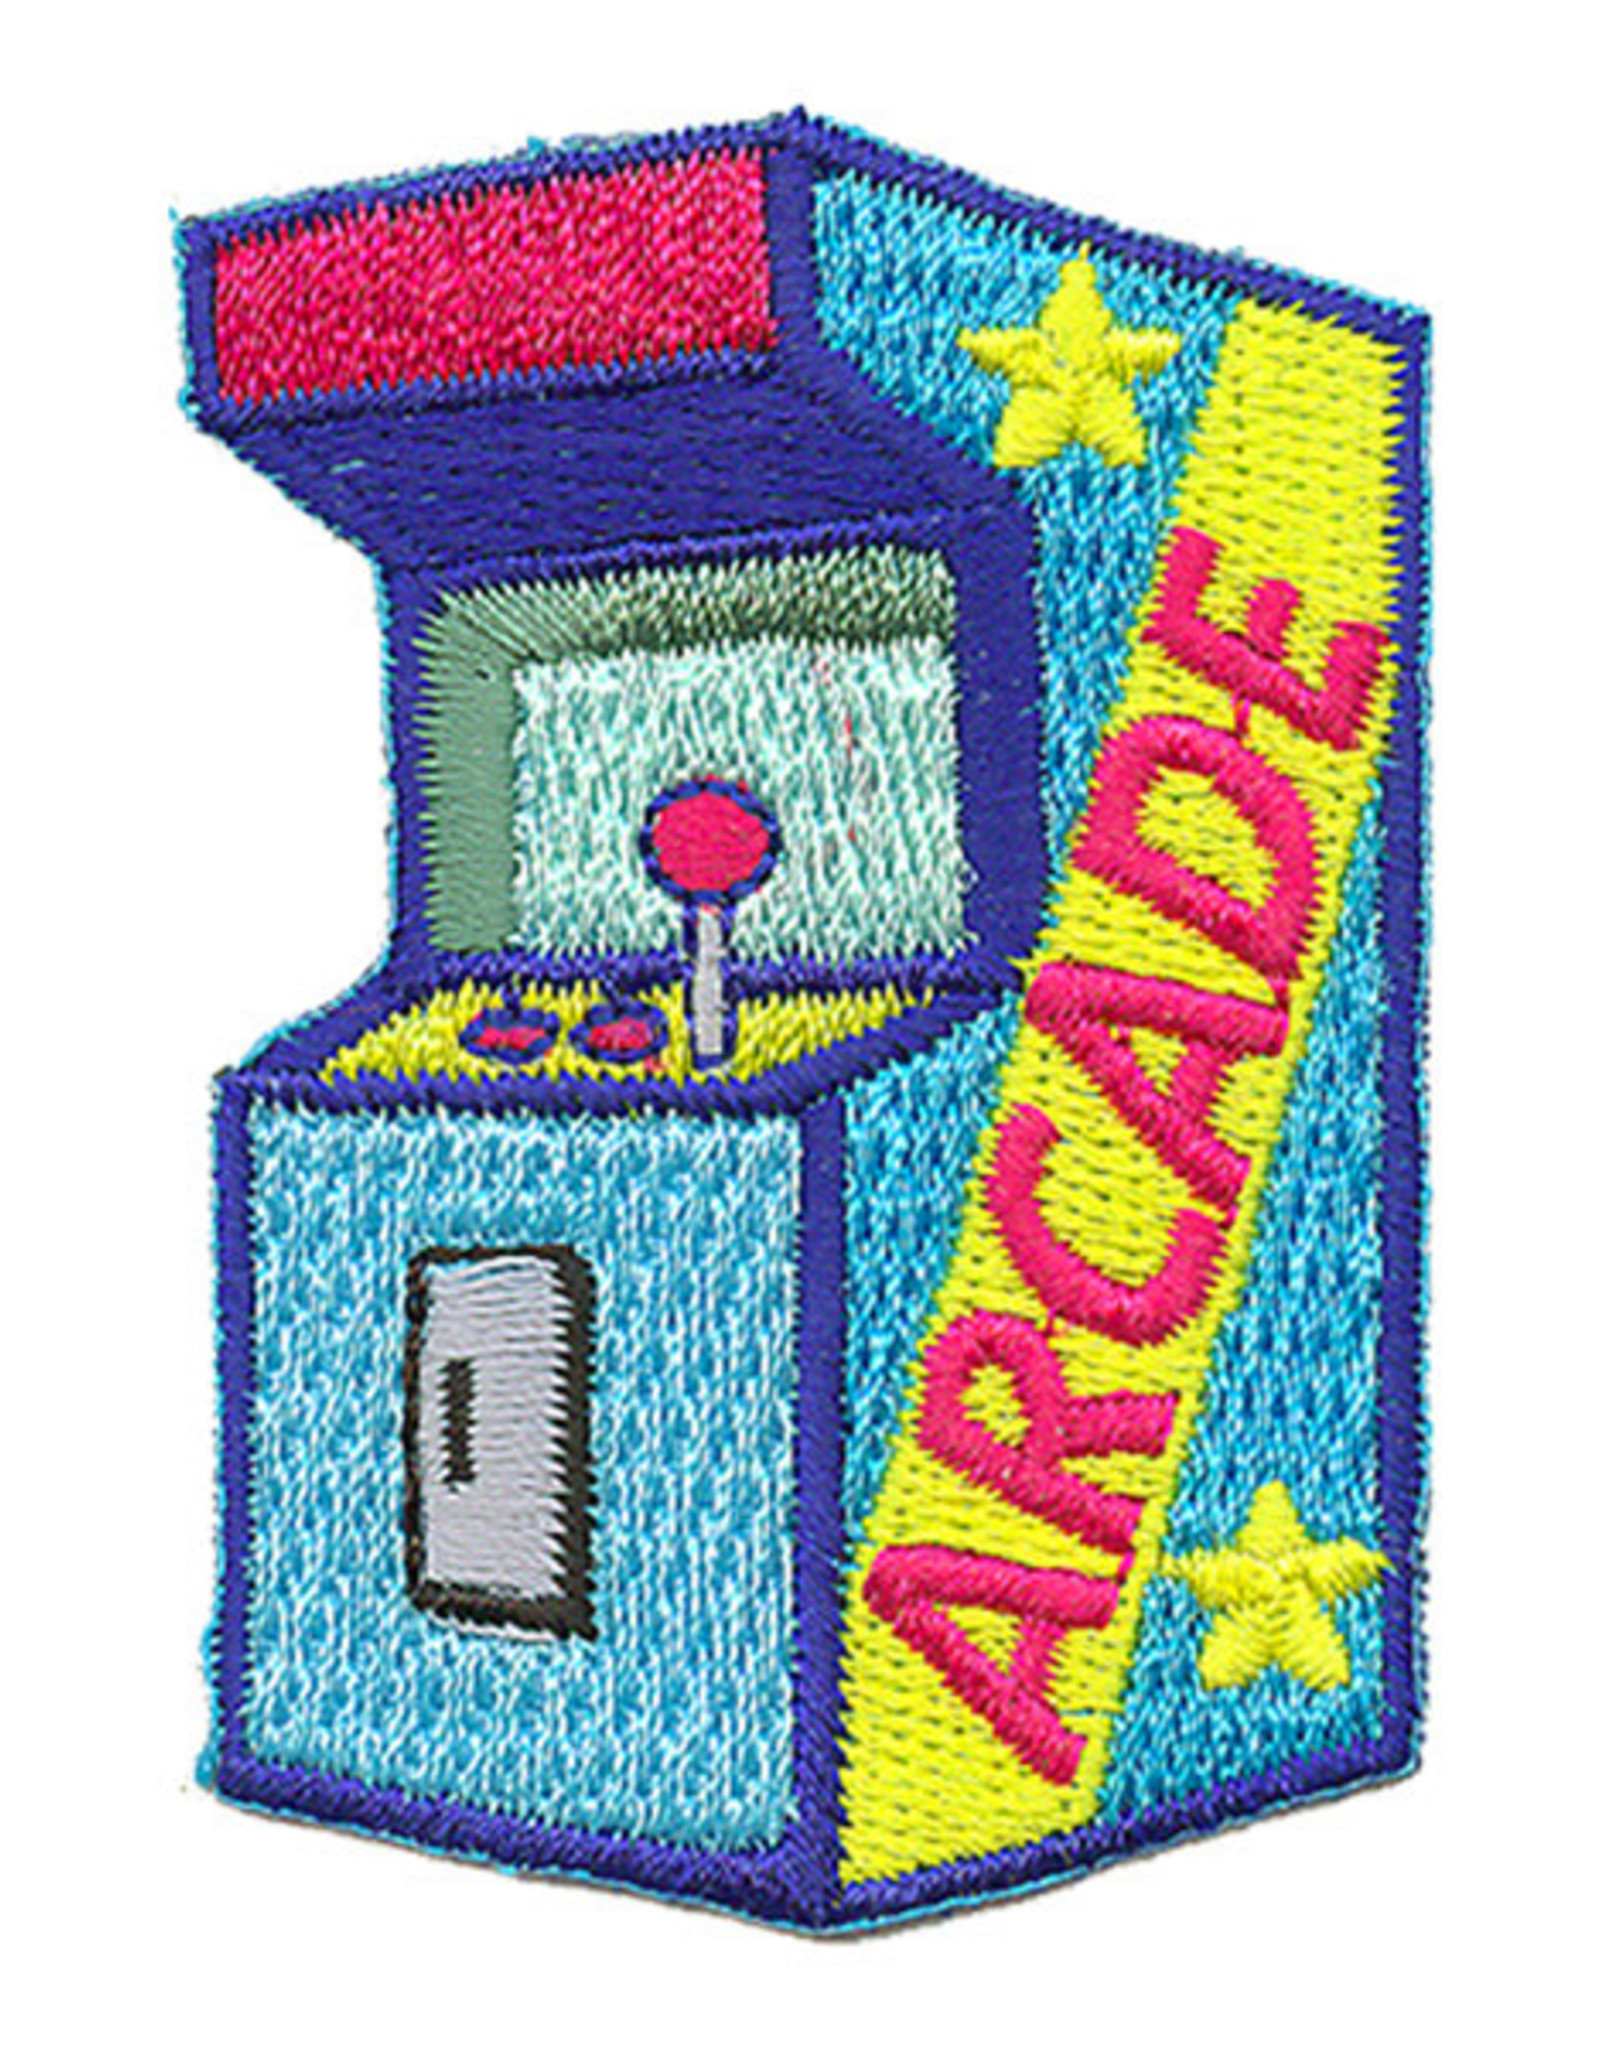 Advantage Emblem & Screen Prnt *Arcade Video Game Fun Patch